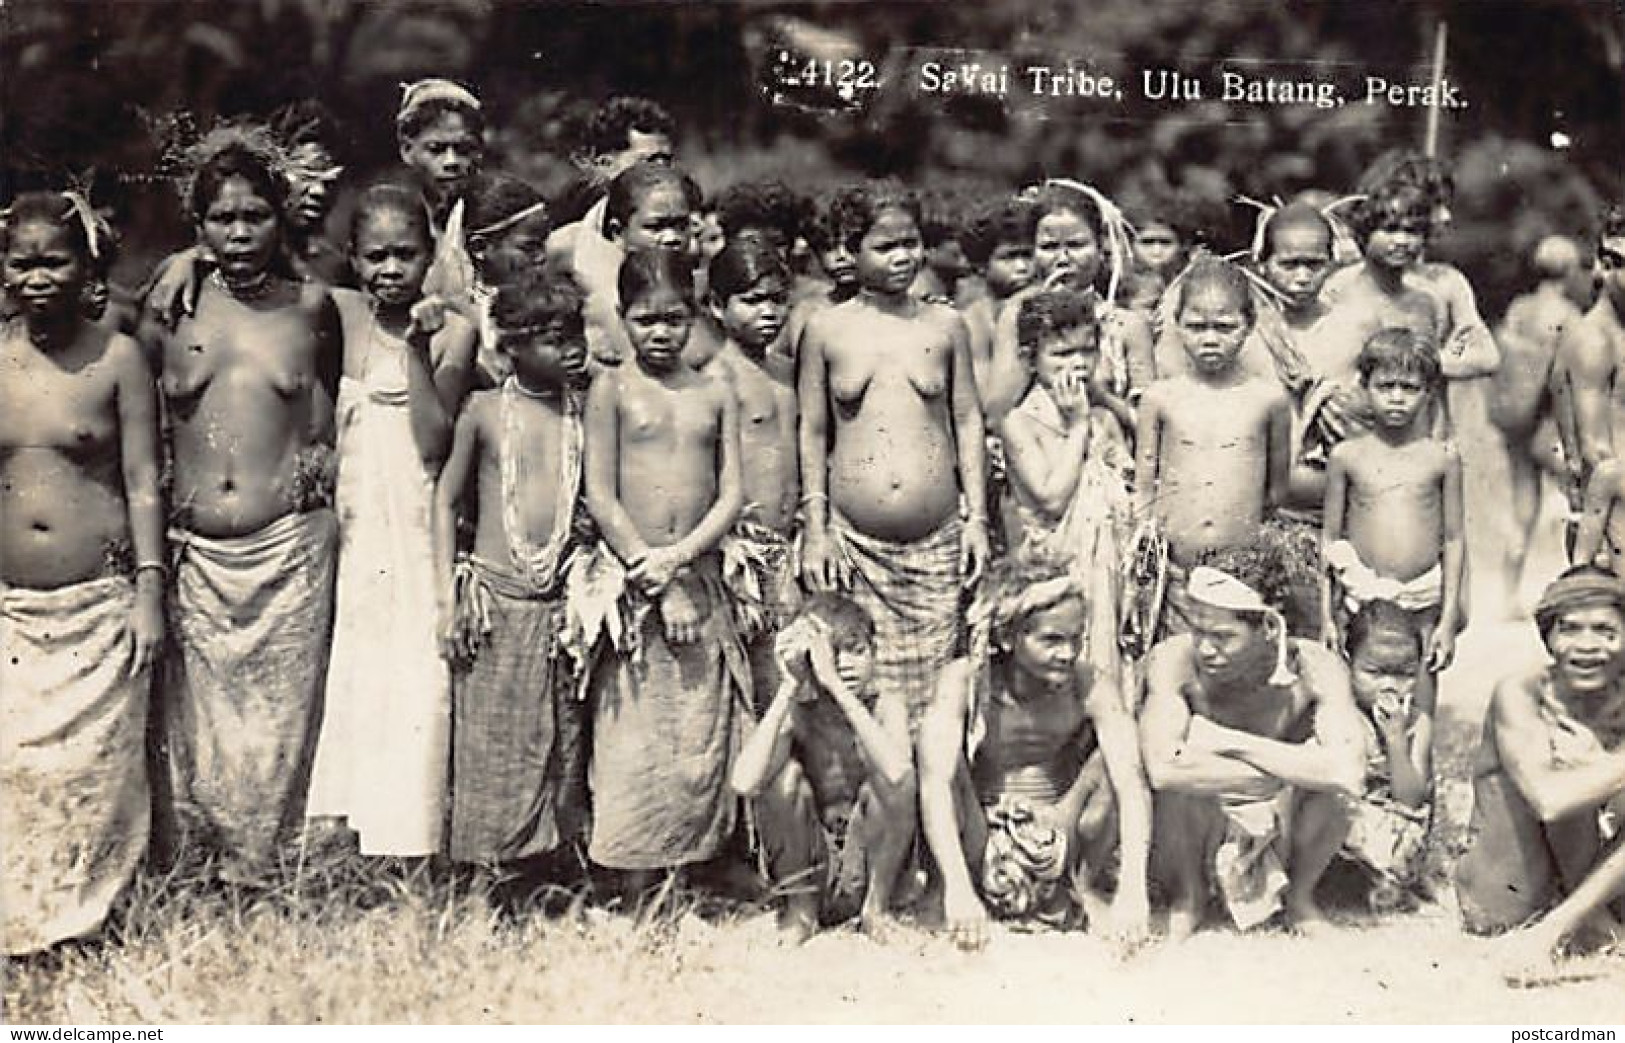 Malaysia - ULU BATANG Perak - ETHNIC NUDE - Sakai Tribe - REAL PHOTO - Publ. Unknown  - Malaysia